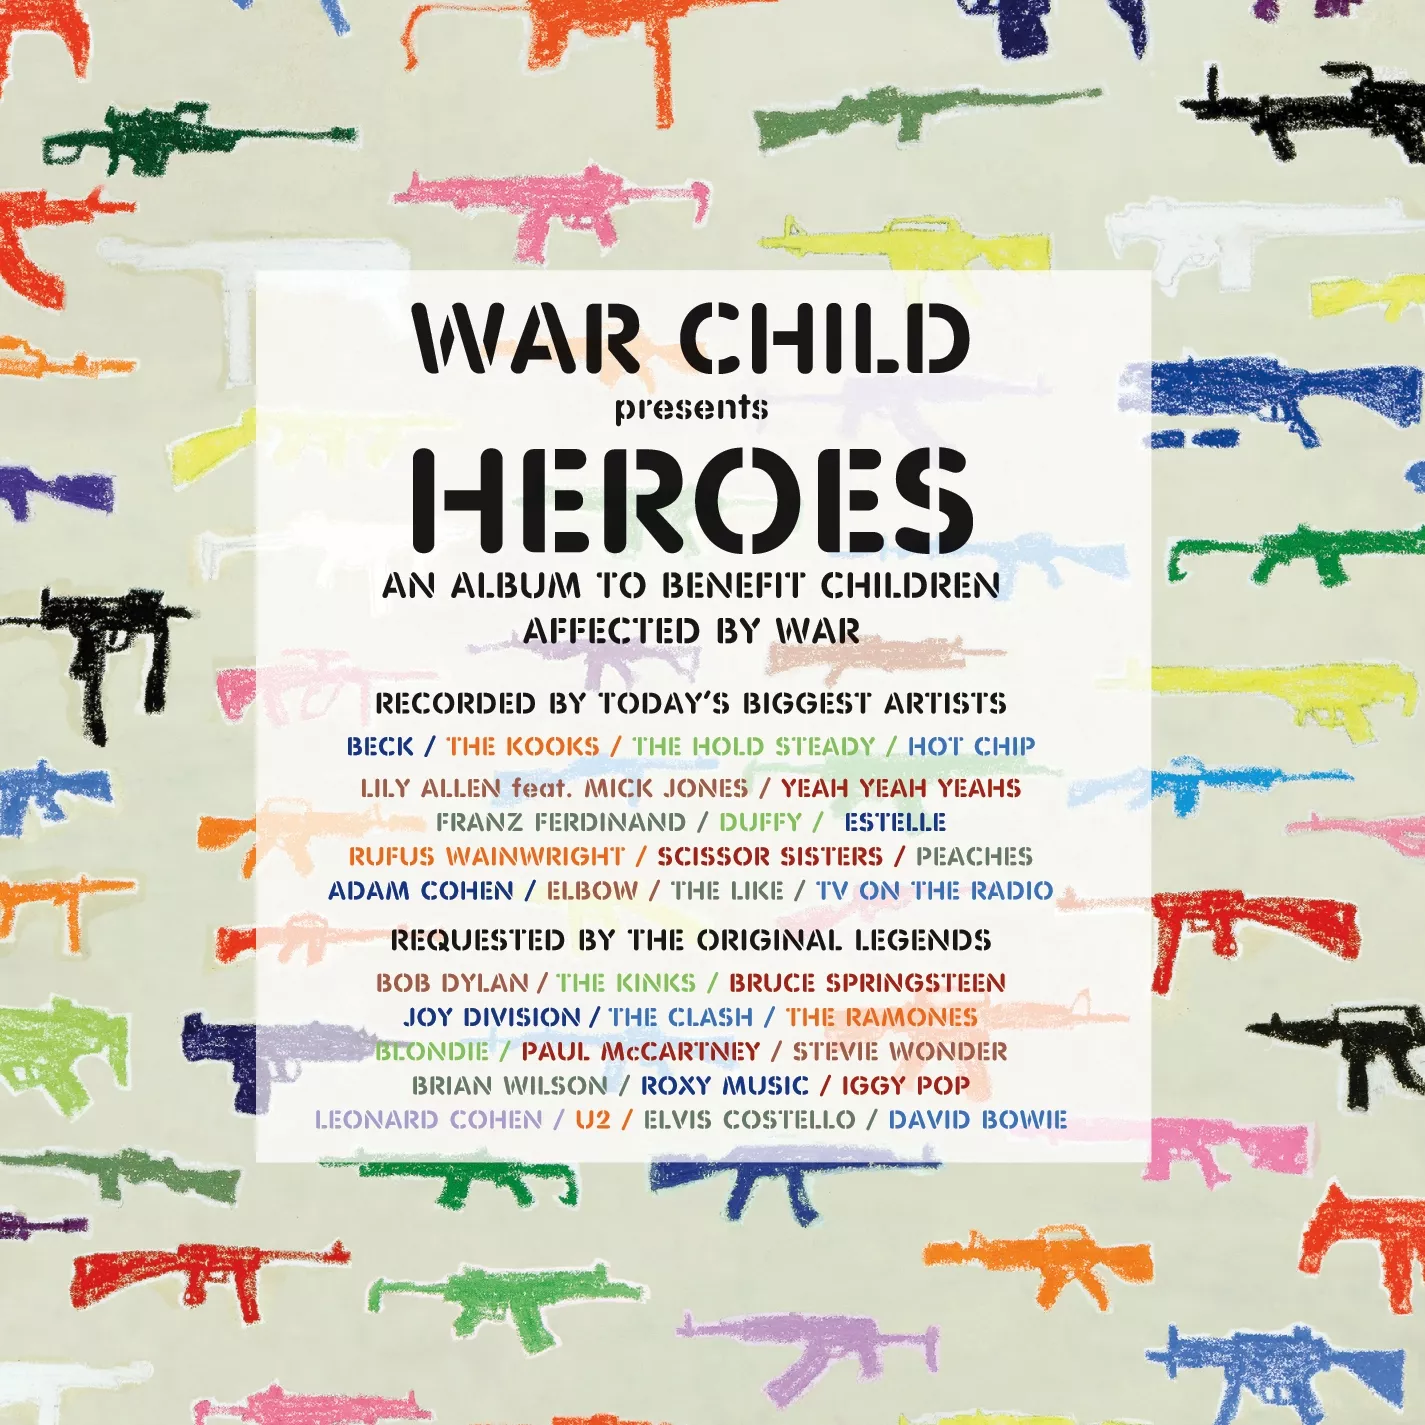 John Squires cover-art til “Heroes” ryger på auktion til fordel for War Child